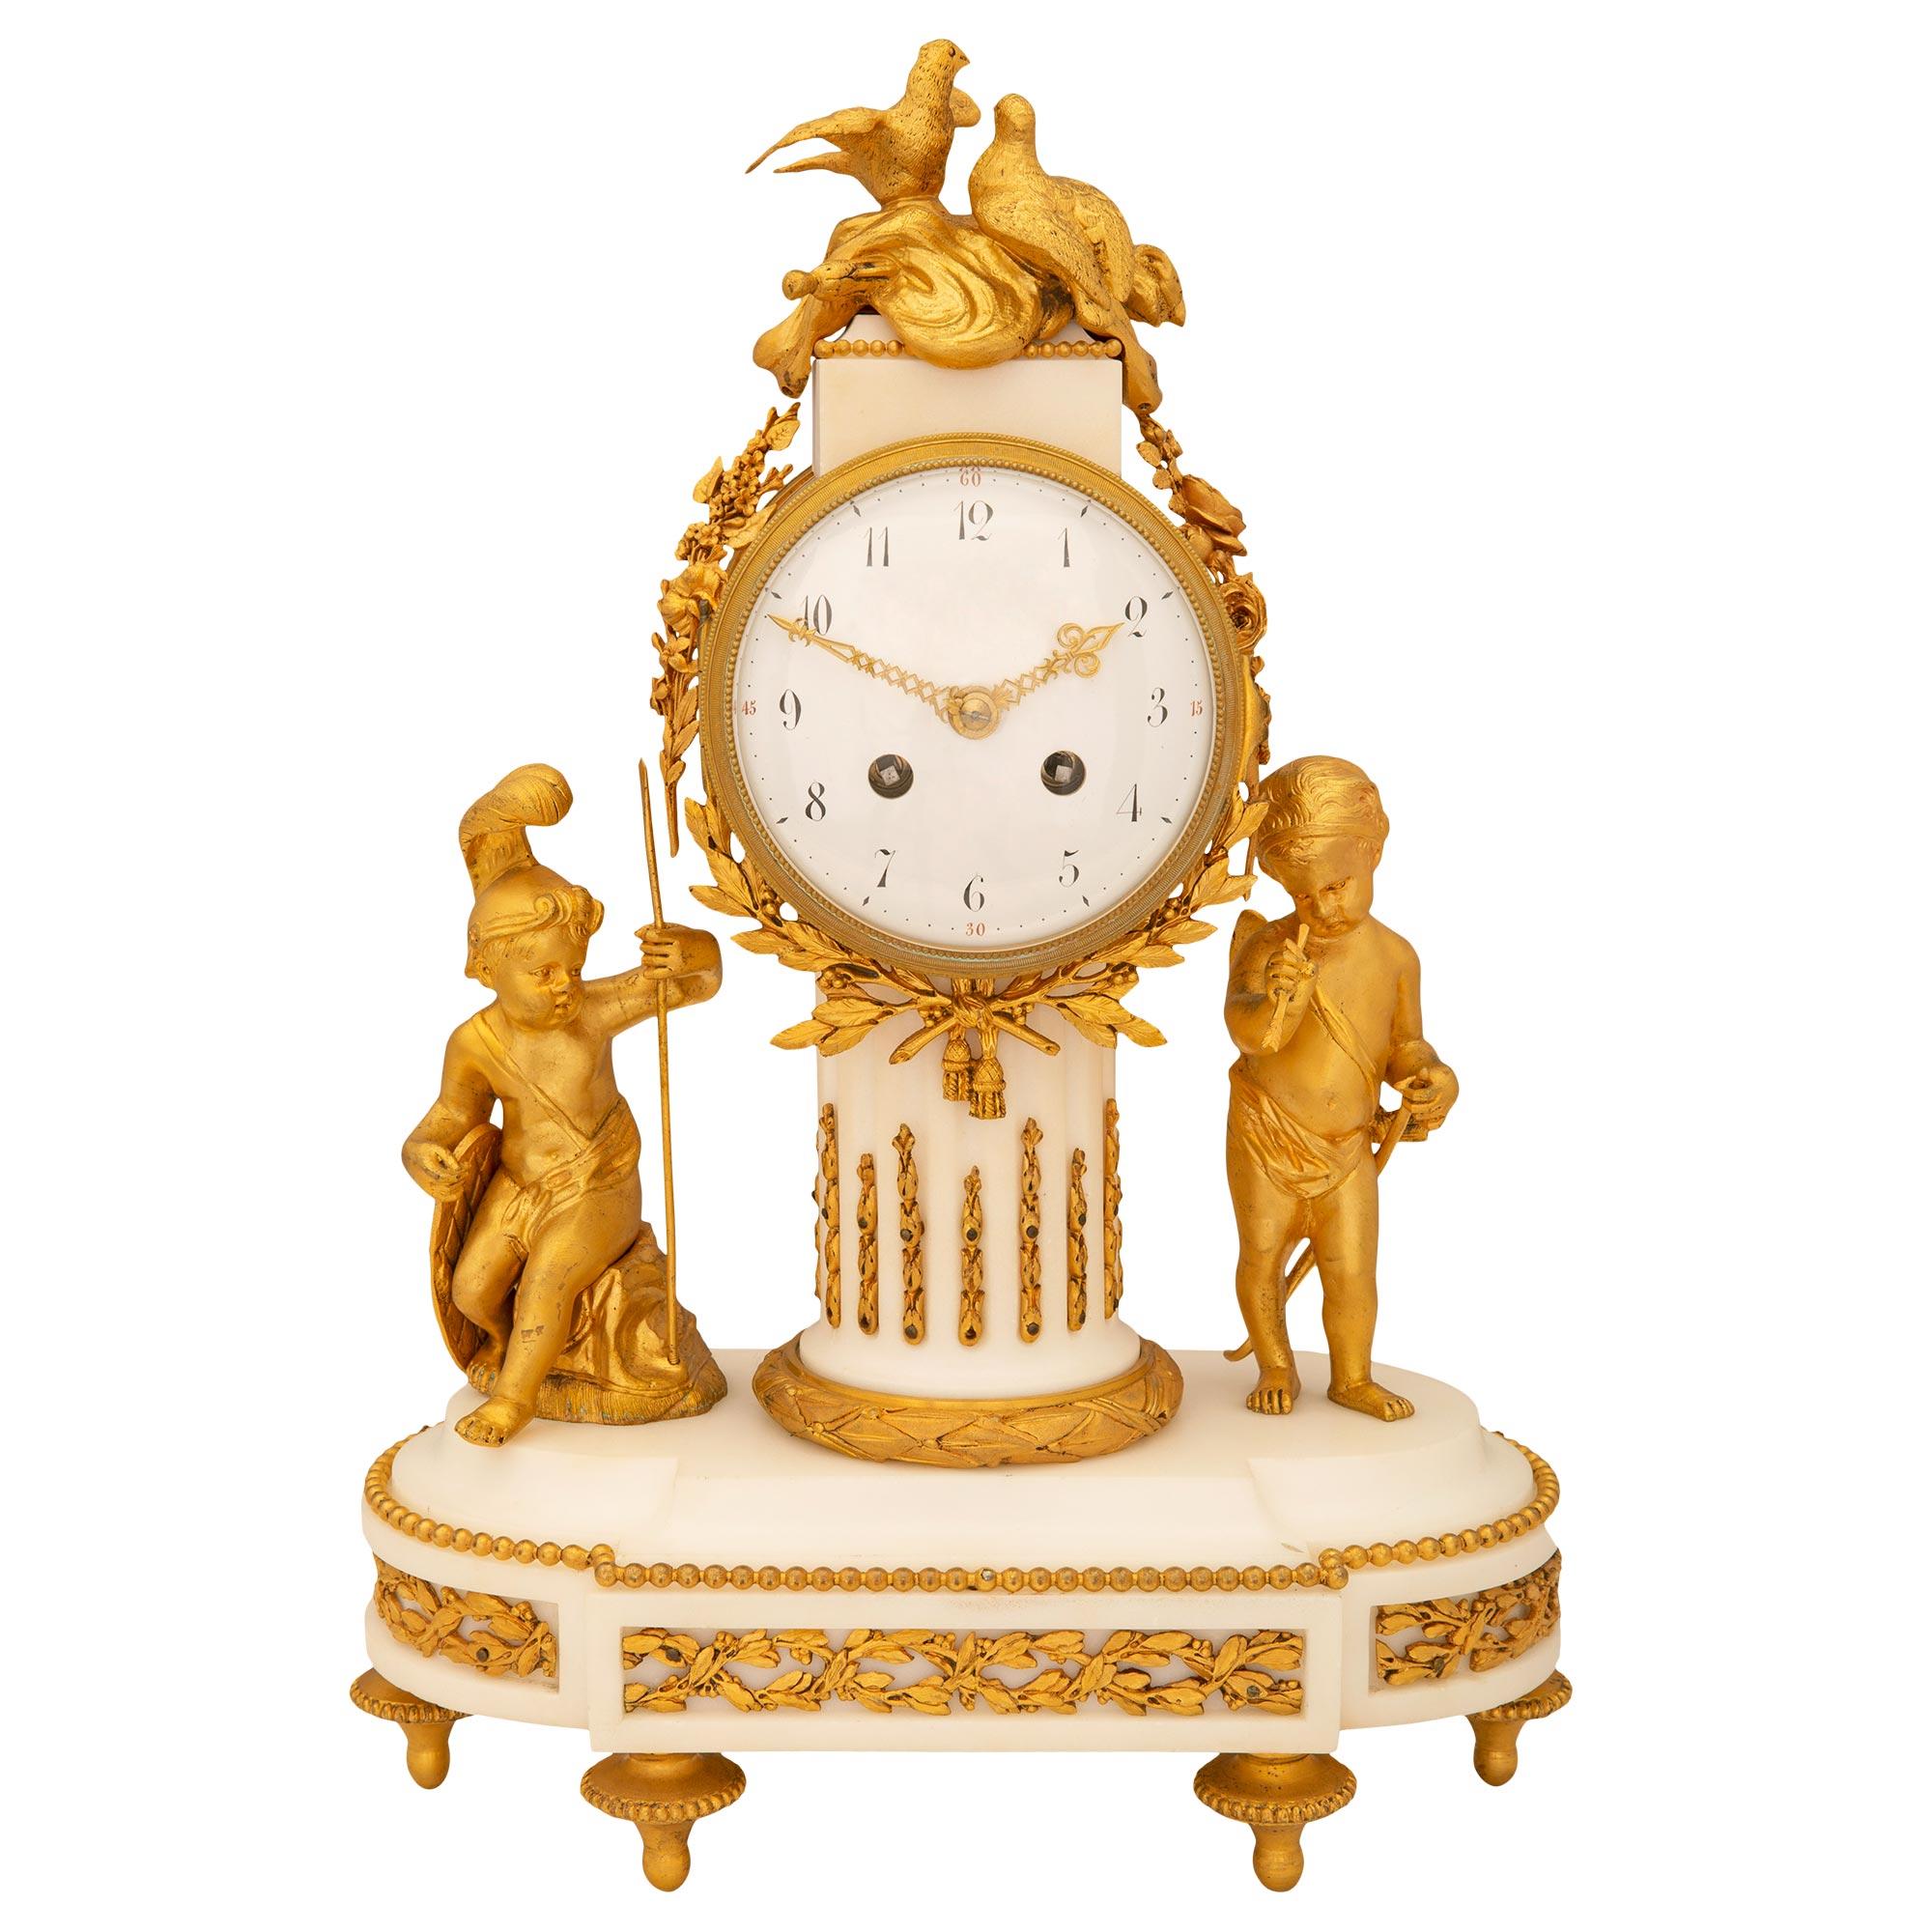 Exquise pendule française du XIXe siècle de style Louis XVI en marbre blanc de Carrare et bronze doré. La pendule est soutenue par des supports en forme de topie en bronze doré, sous une base en marbre avec un feuillage en bronze doré et une rangée